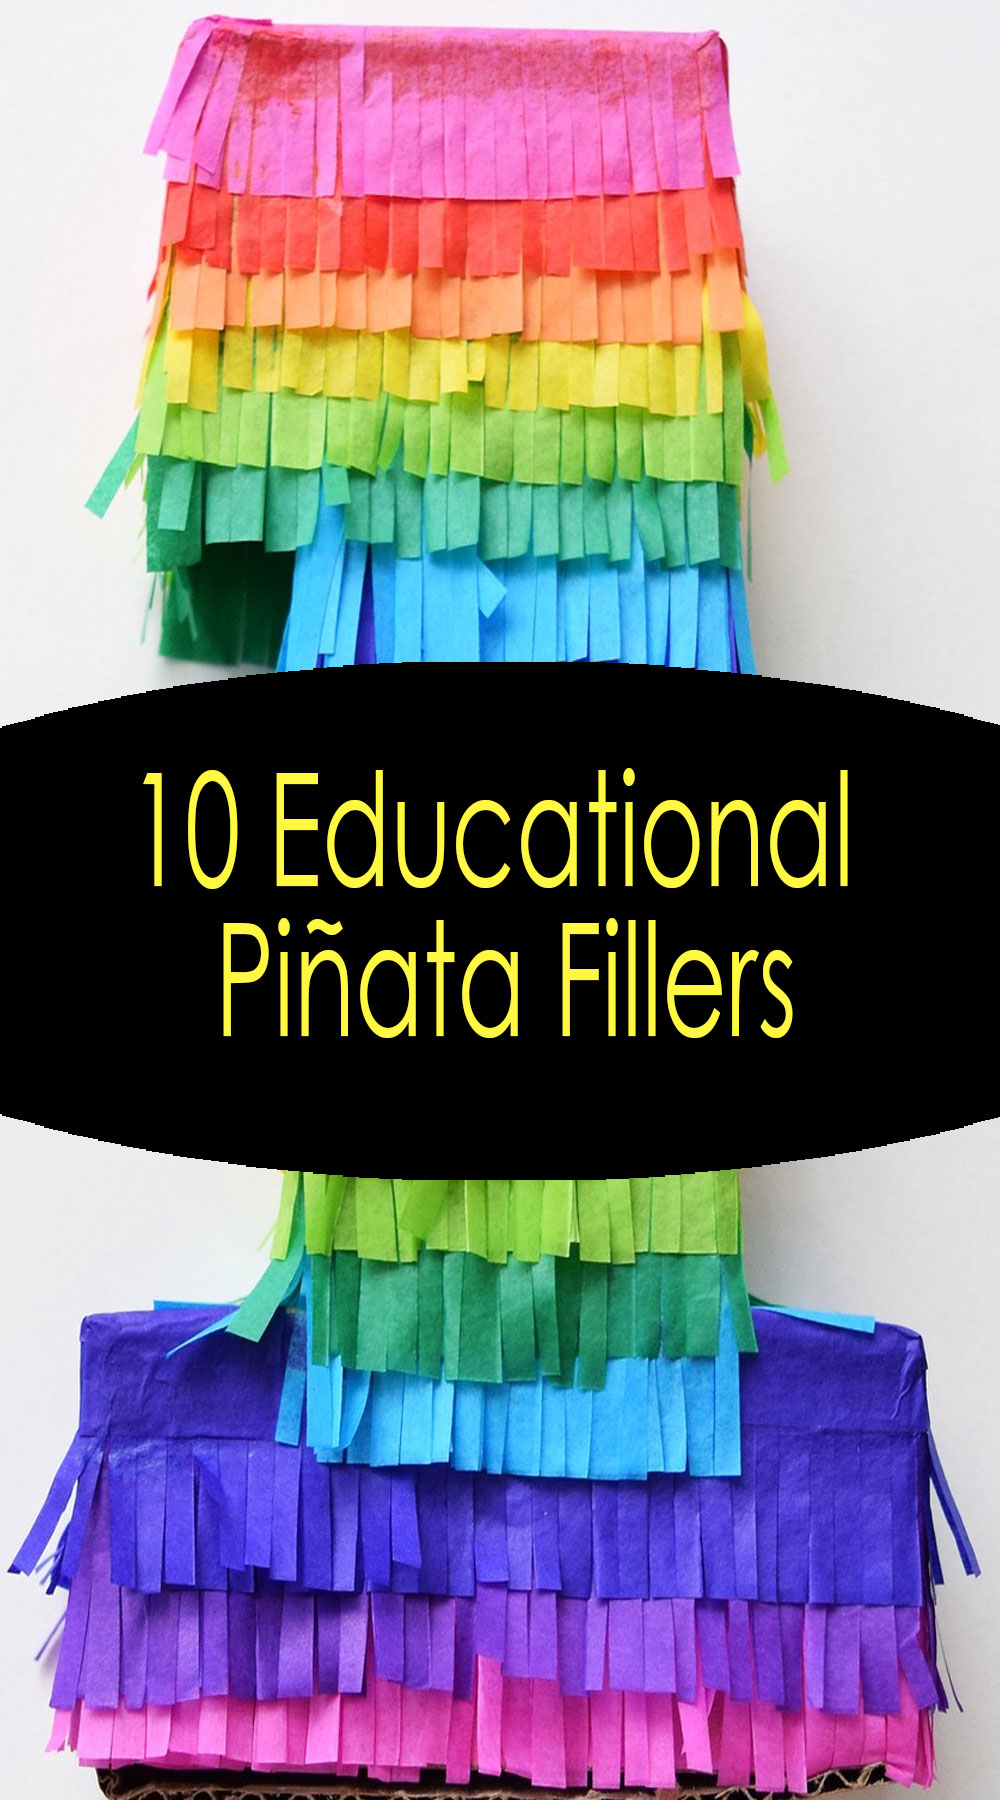 10 Educational Piñata Fillers